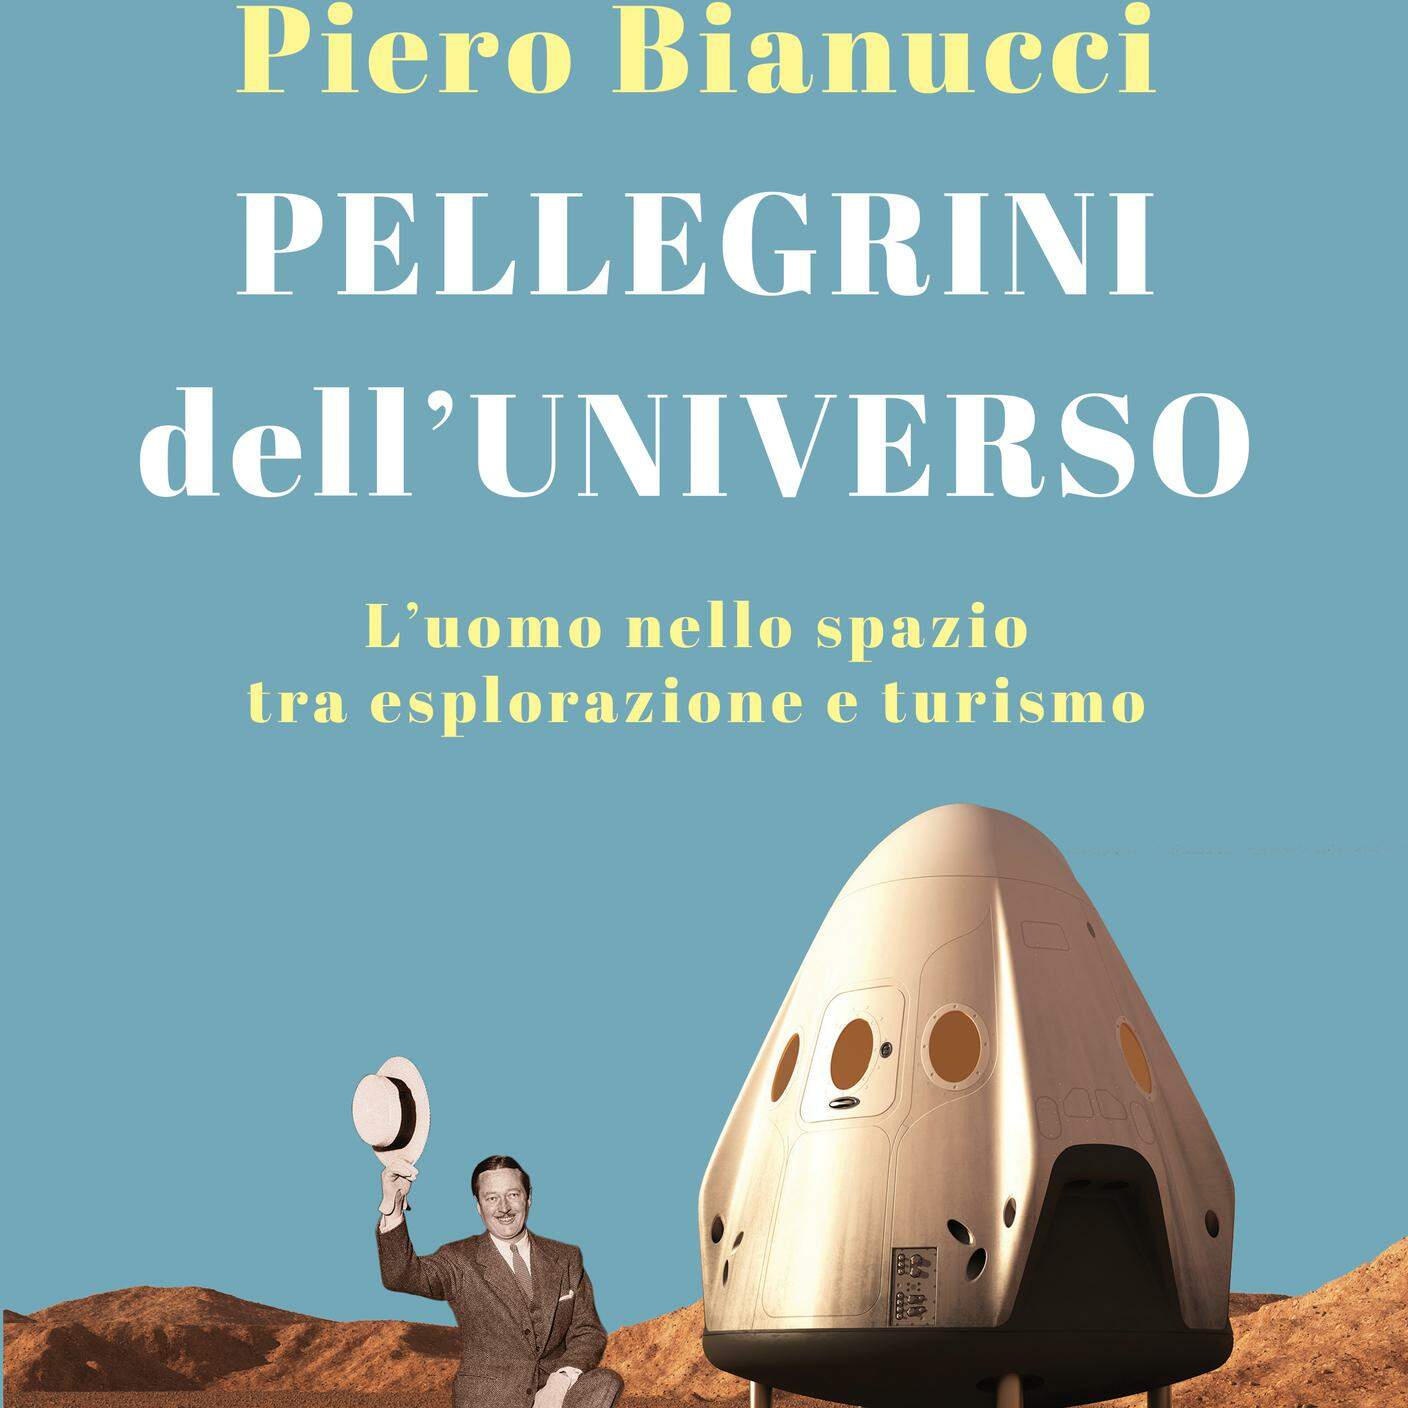 "Pellegrini dell’universo; l’uomo nello spazio tra esplorazione e turismo" di Piero Bianucci, Solferino (dettaglio di copertina)